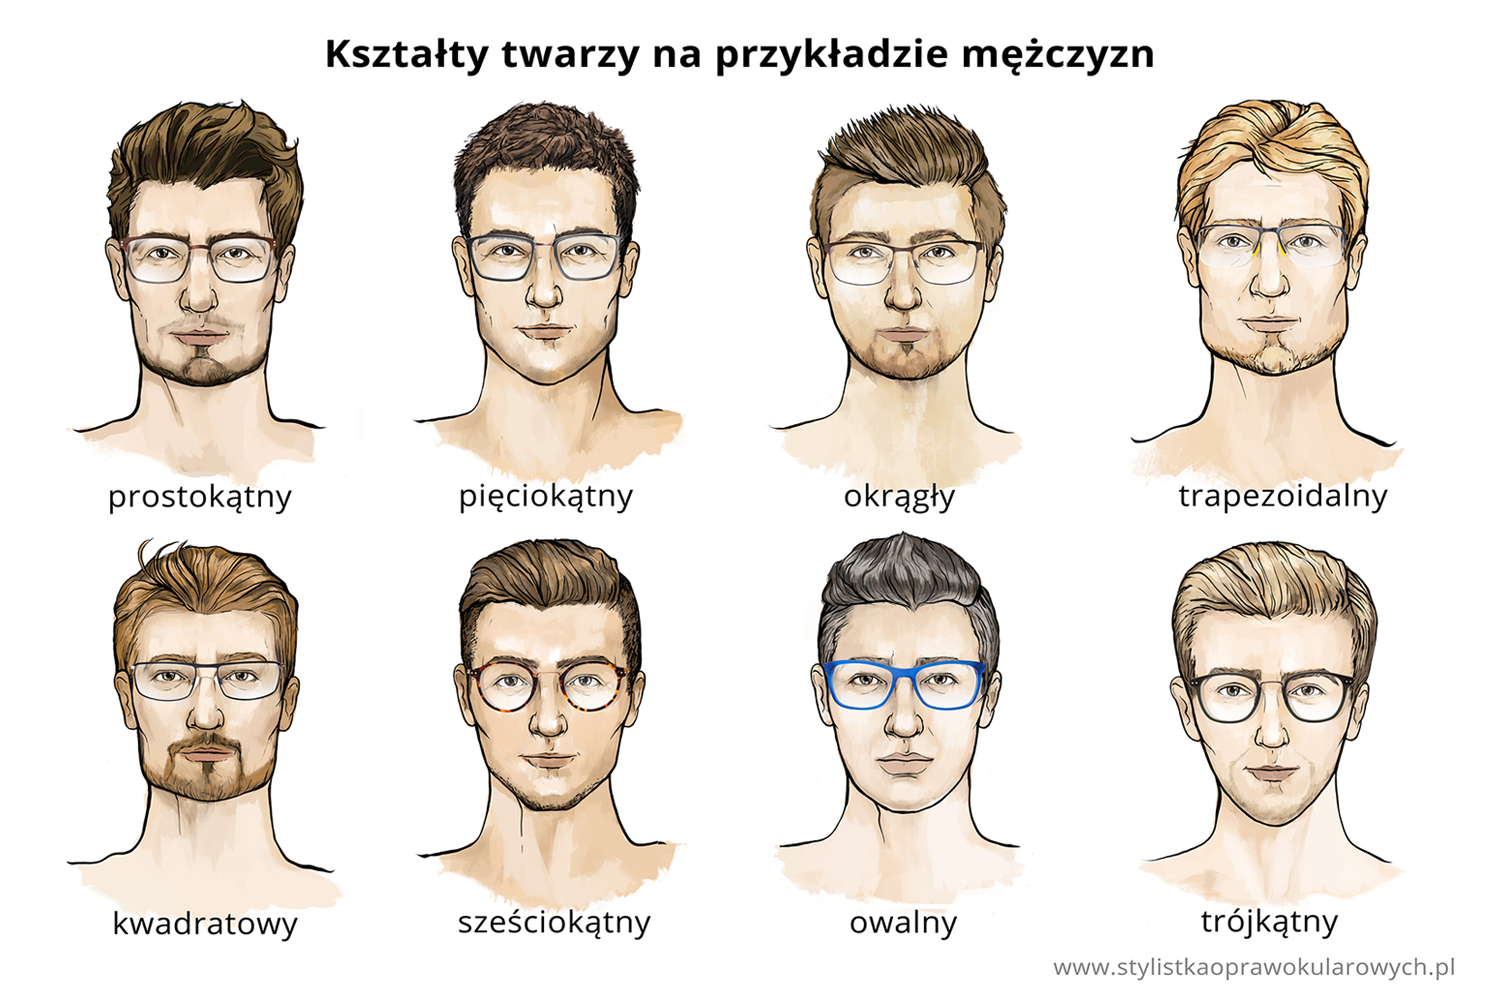 Dobór okularów do kształtu twarzy. Ilustracja przedstawia męskie twarze z prawidłowo dobranymi oprawkami